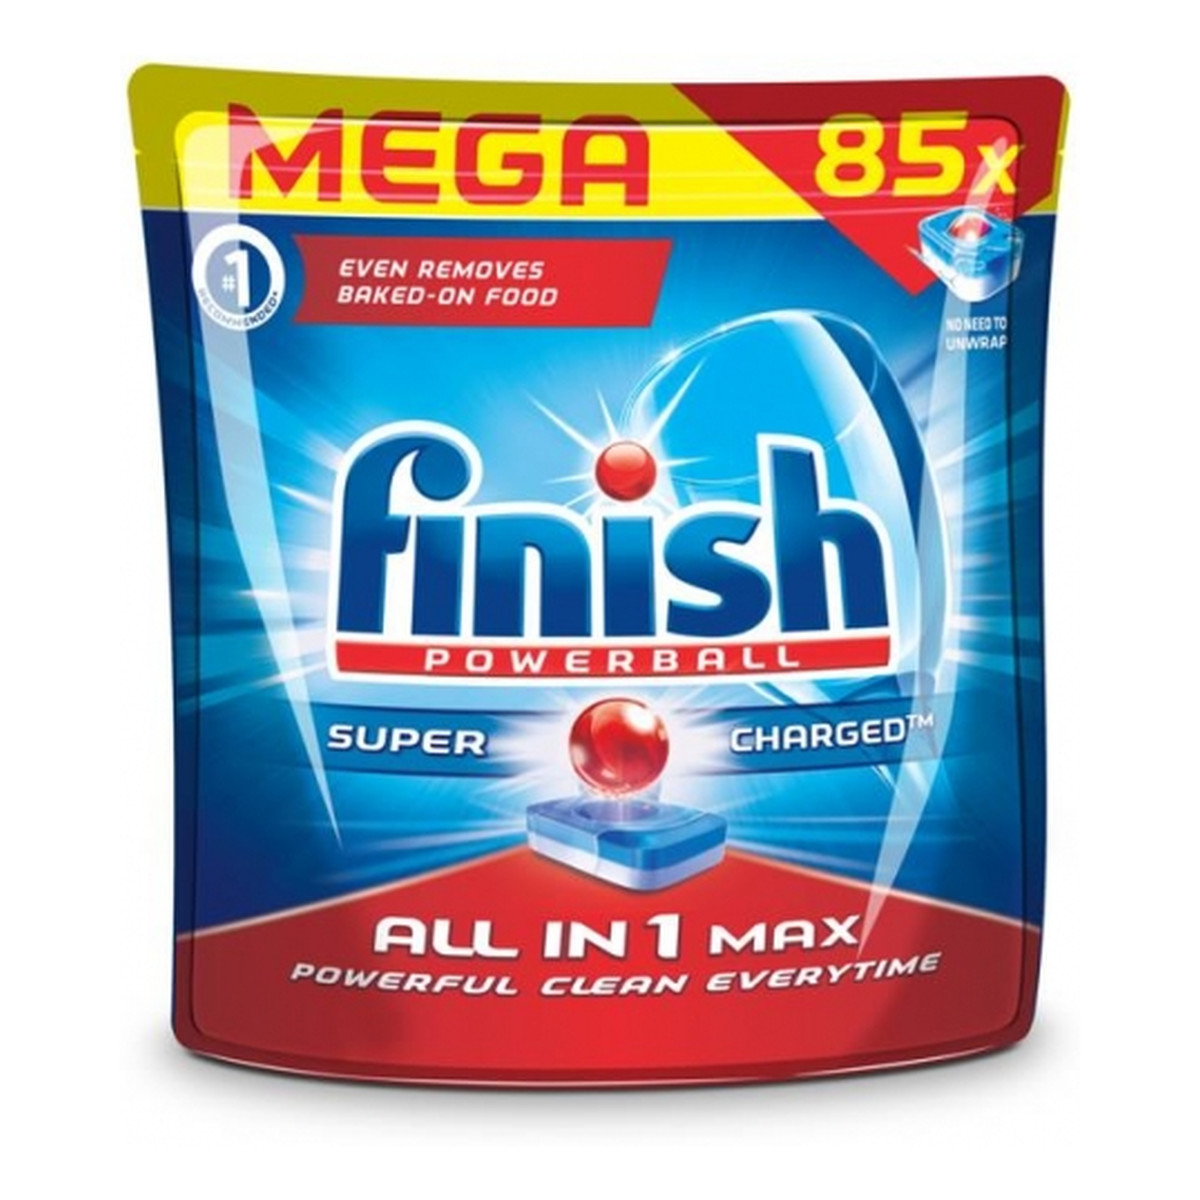 Finish Powerball Super Charged All In 1 Max tabletki do mycia naczyń w zmywarkach 85szt